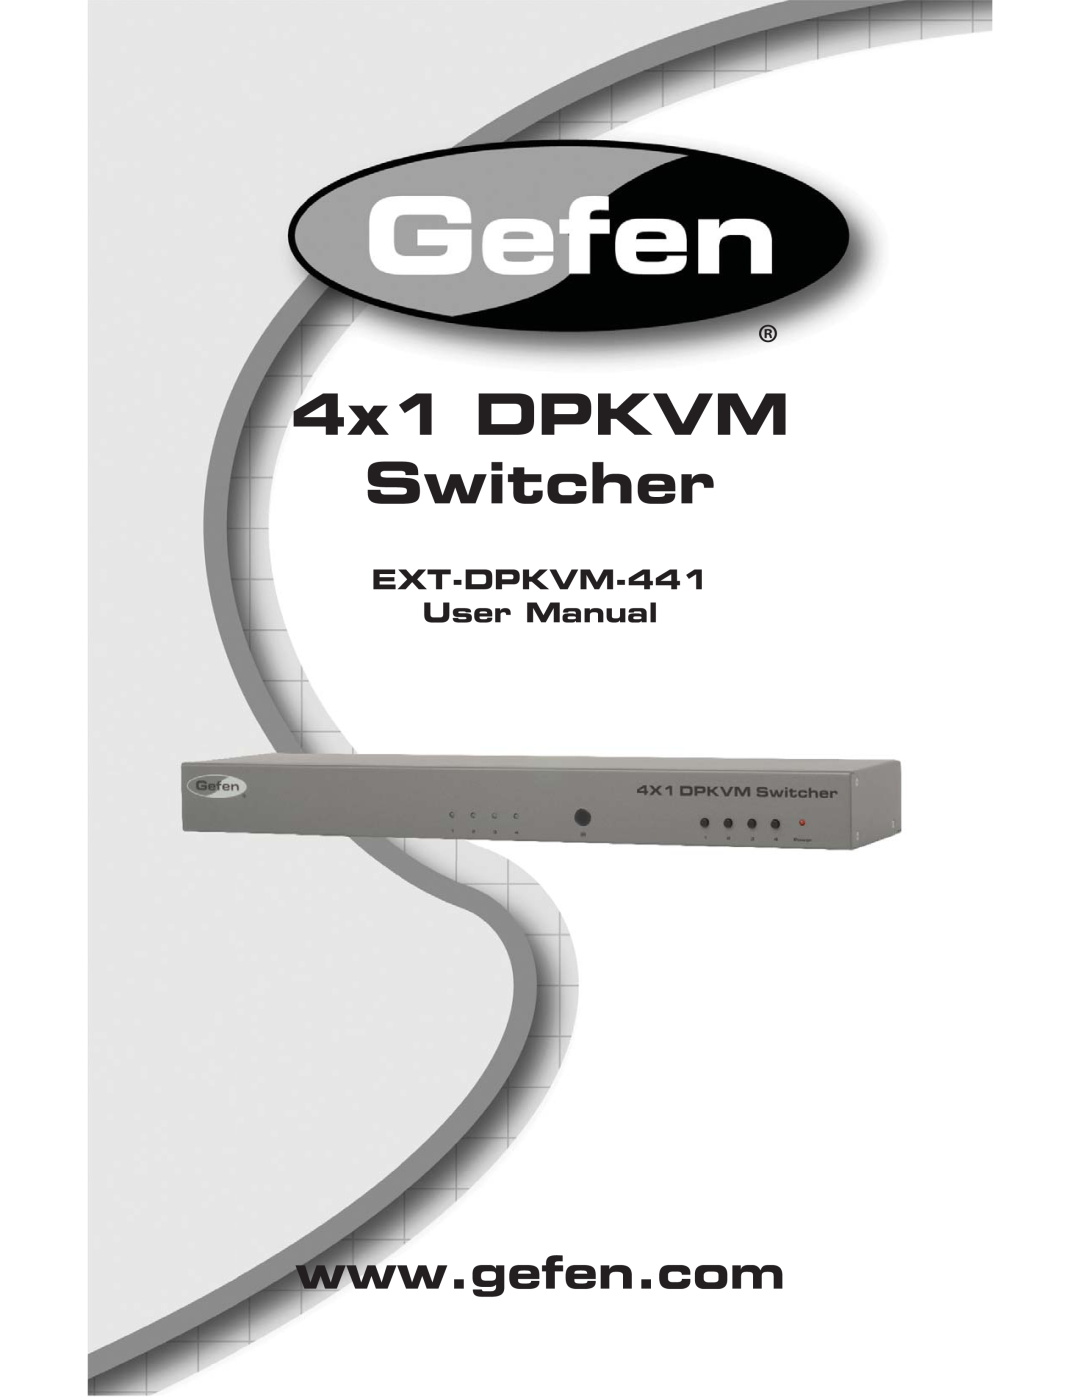 Gefen user manual 4x1 DPKVM Switcher, EXT-DPKVM-441 User Manual 